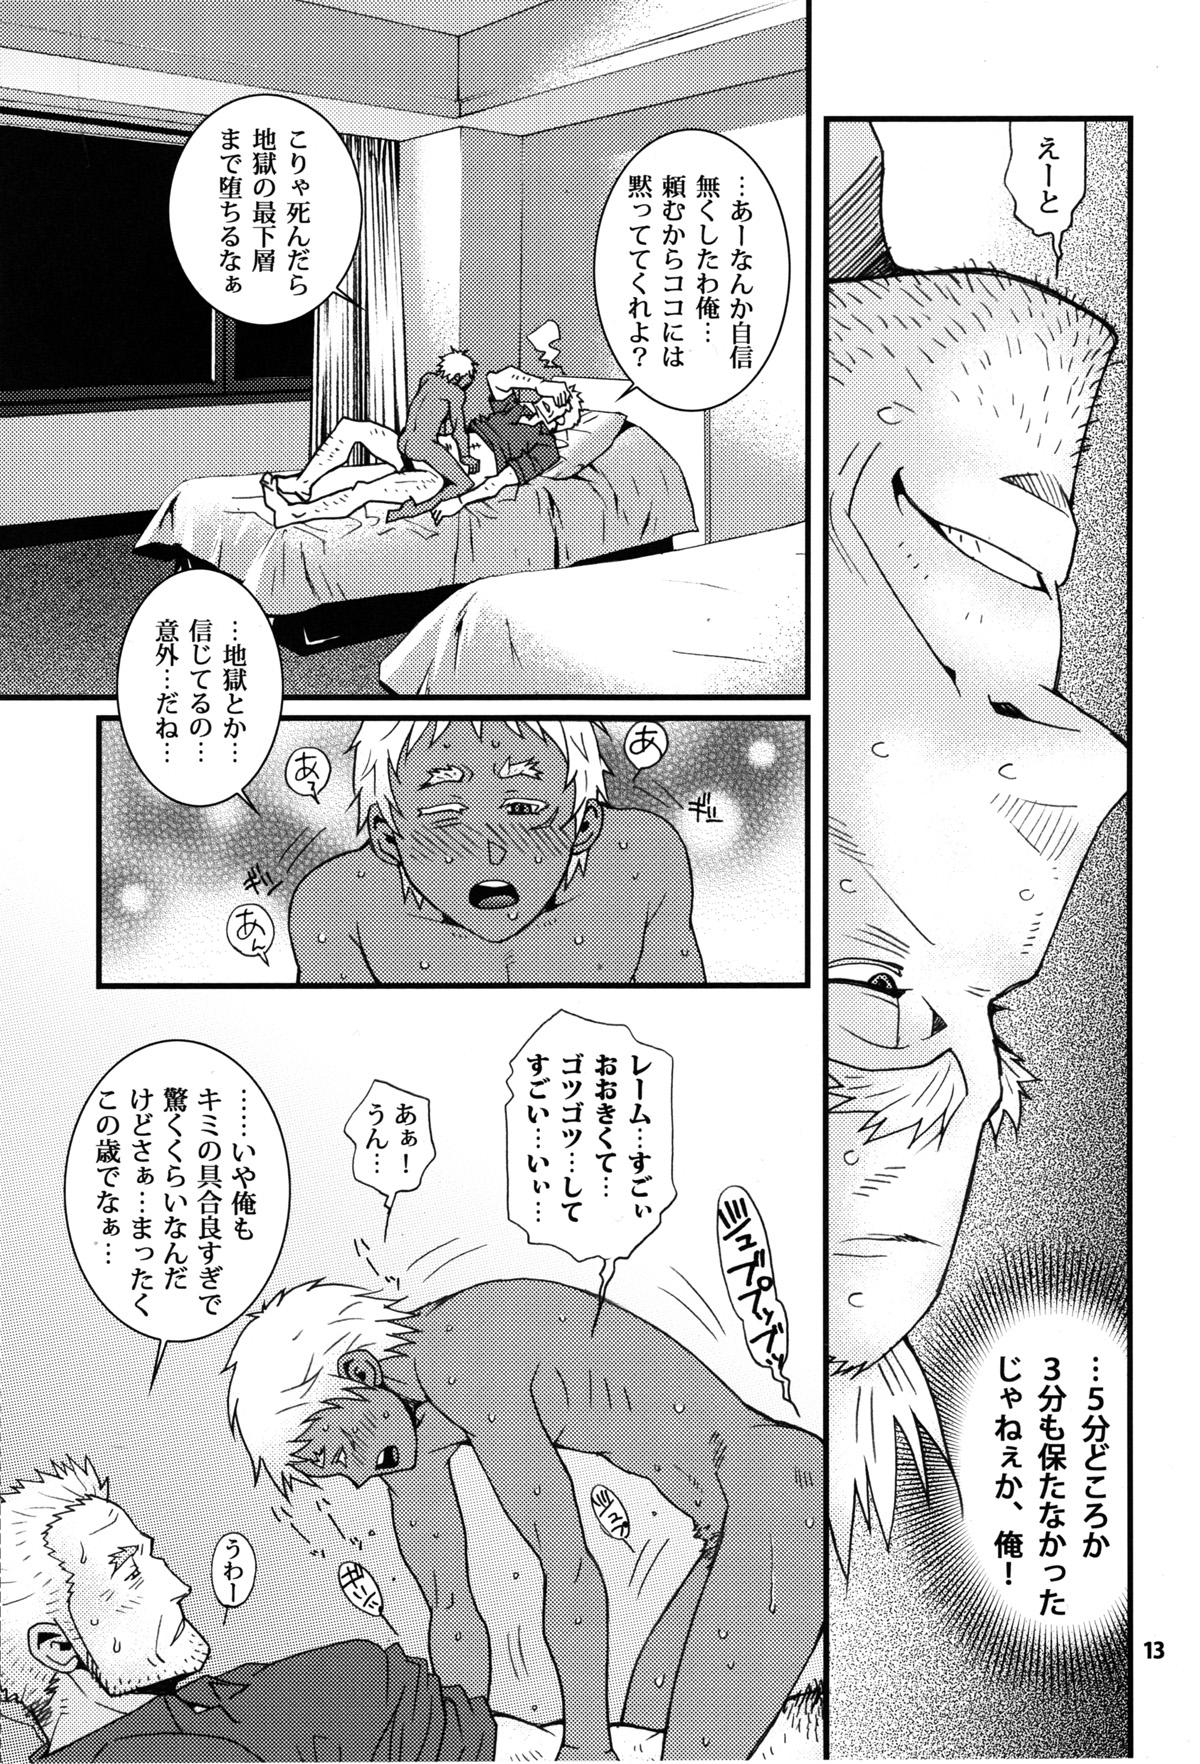 Japan Eeny, meeny, miny, moe... - Jormungand Transex - Page 11